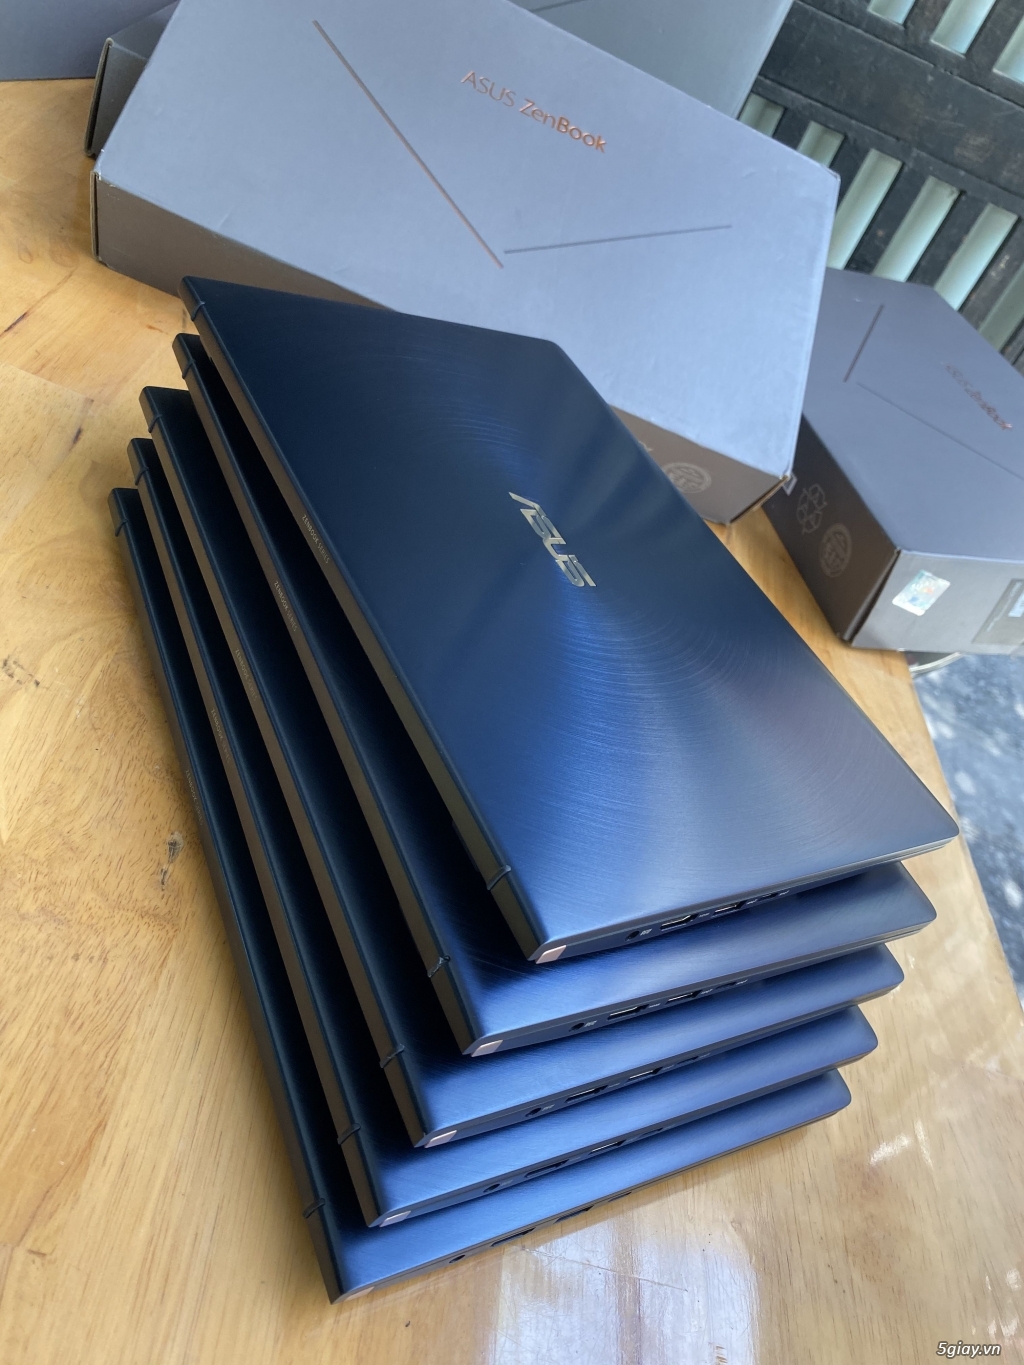 Cần bán Laptop Asus Zenbook UX434F, i5 8G, 512G chỉ 1.26kg, 2 màn hình - 3